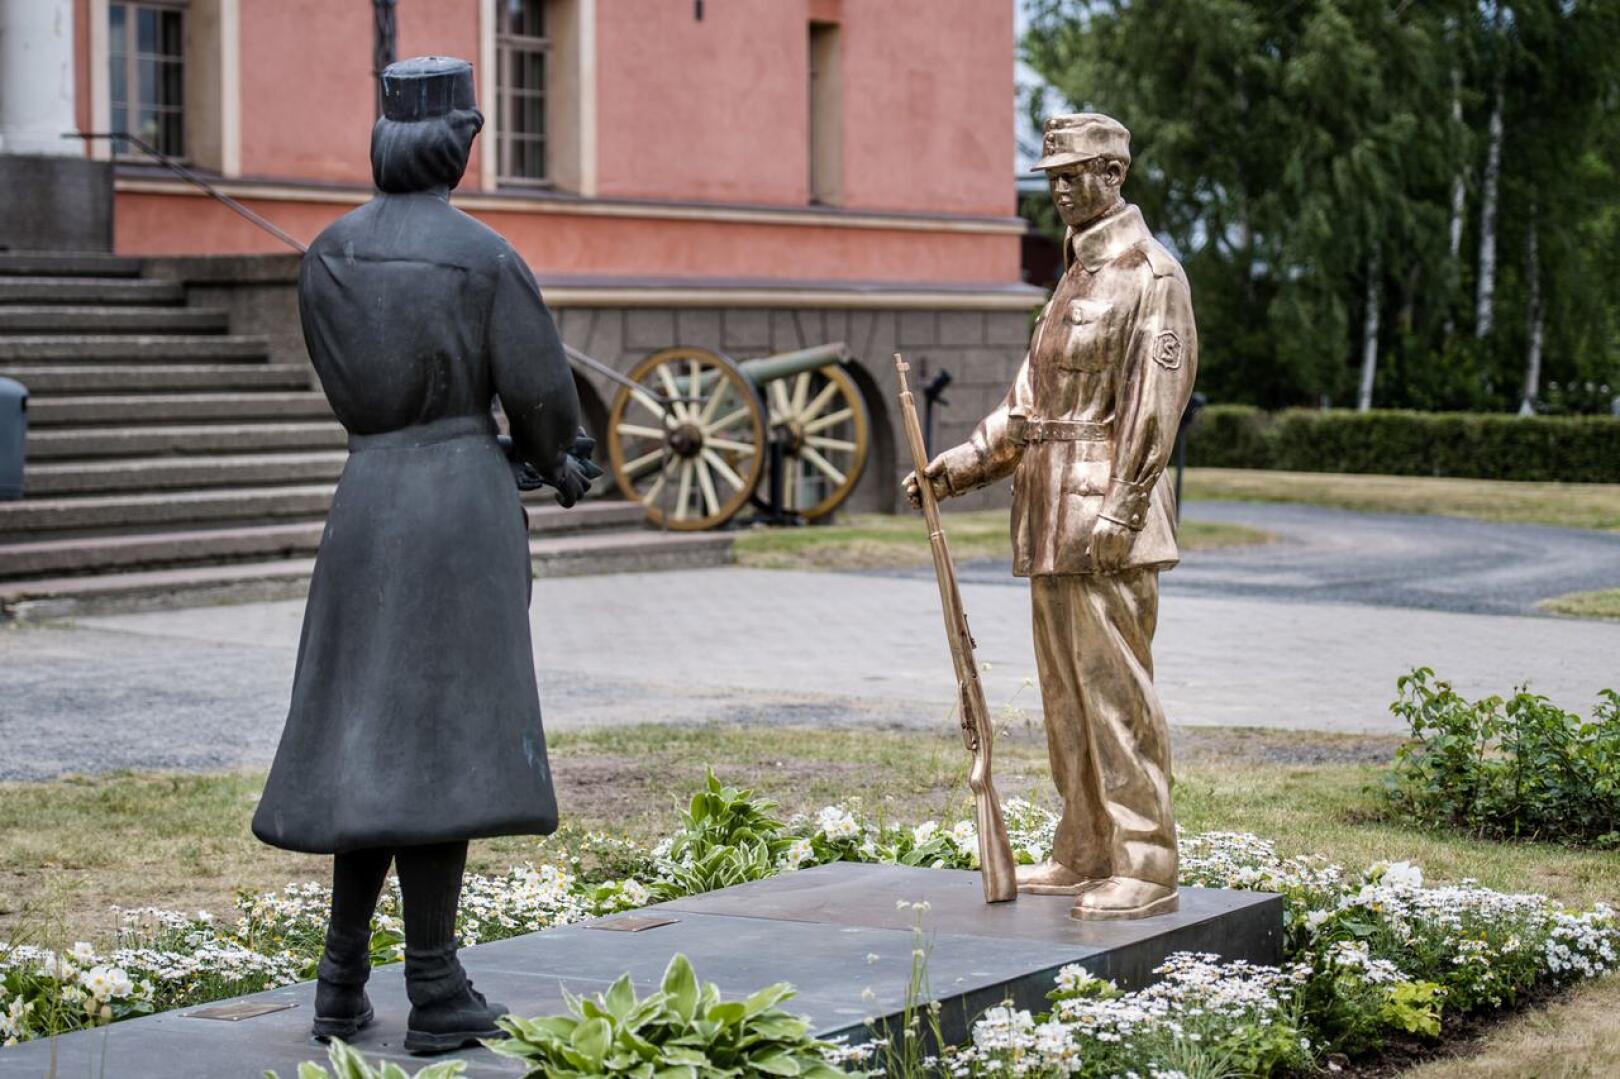 Suojeluskuntalainen-patsas sijoitettiin Lotta-patsaan viereen Vartiolinnan edustalle Kokkolassa.